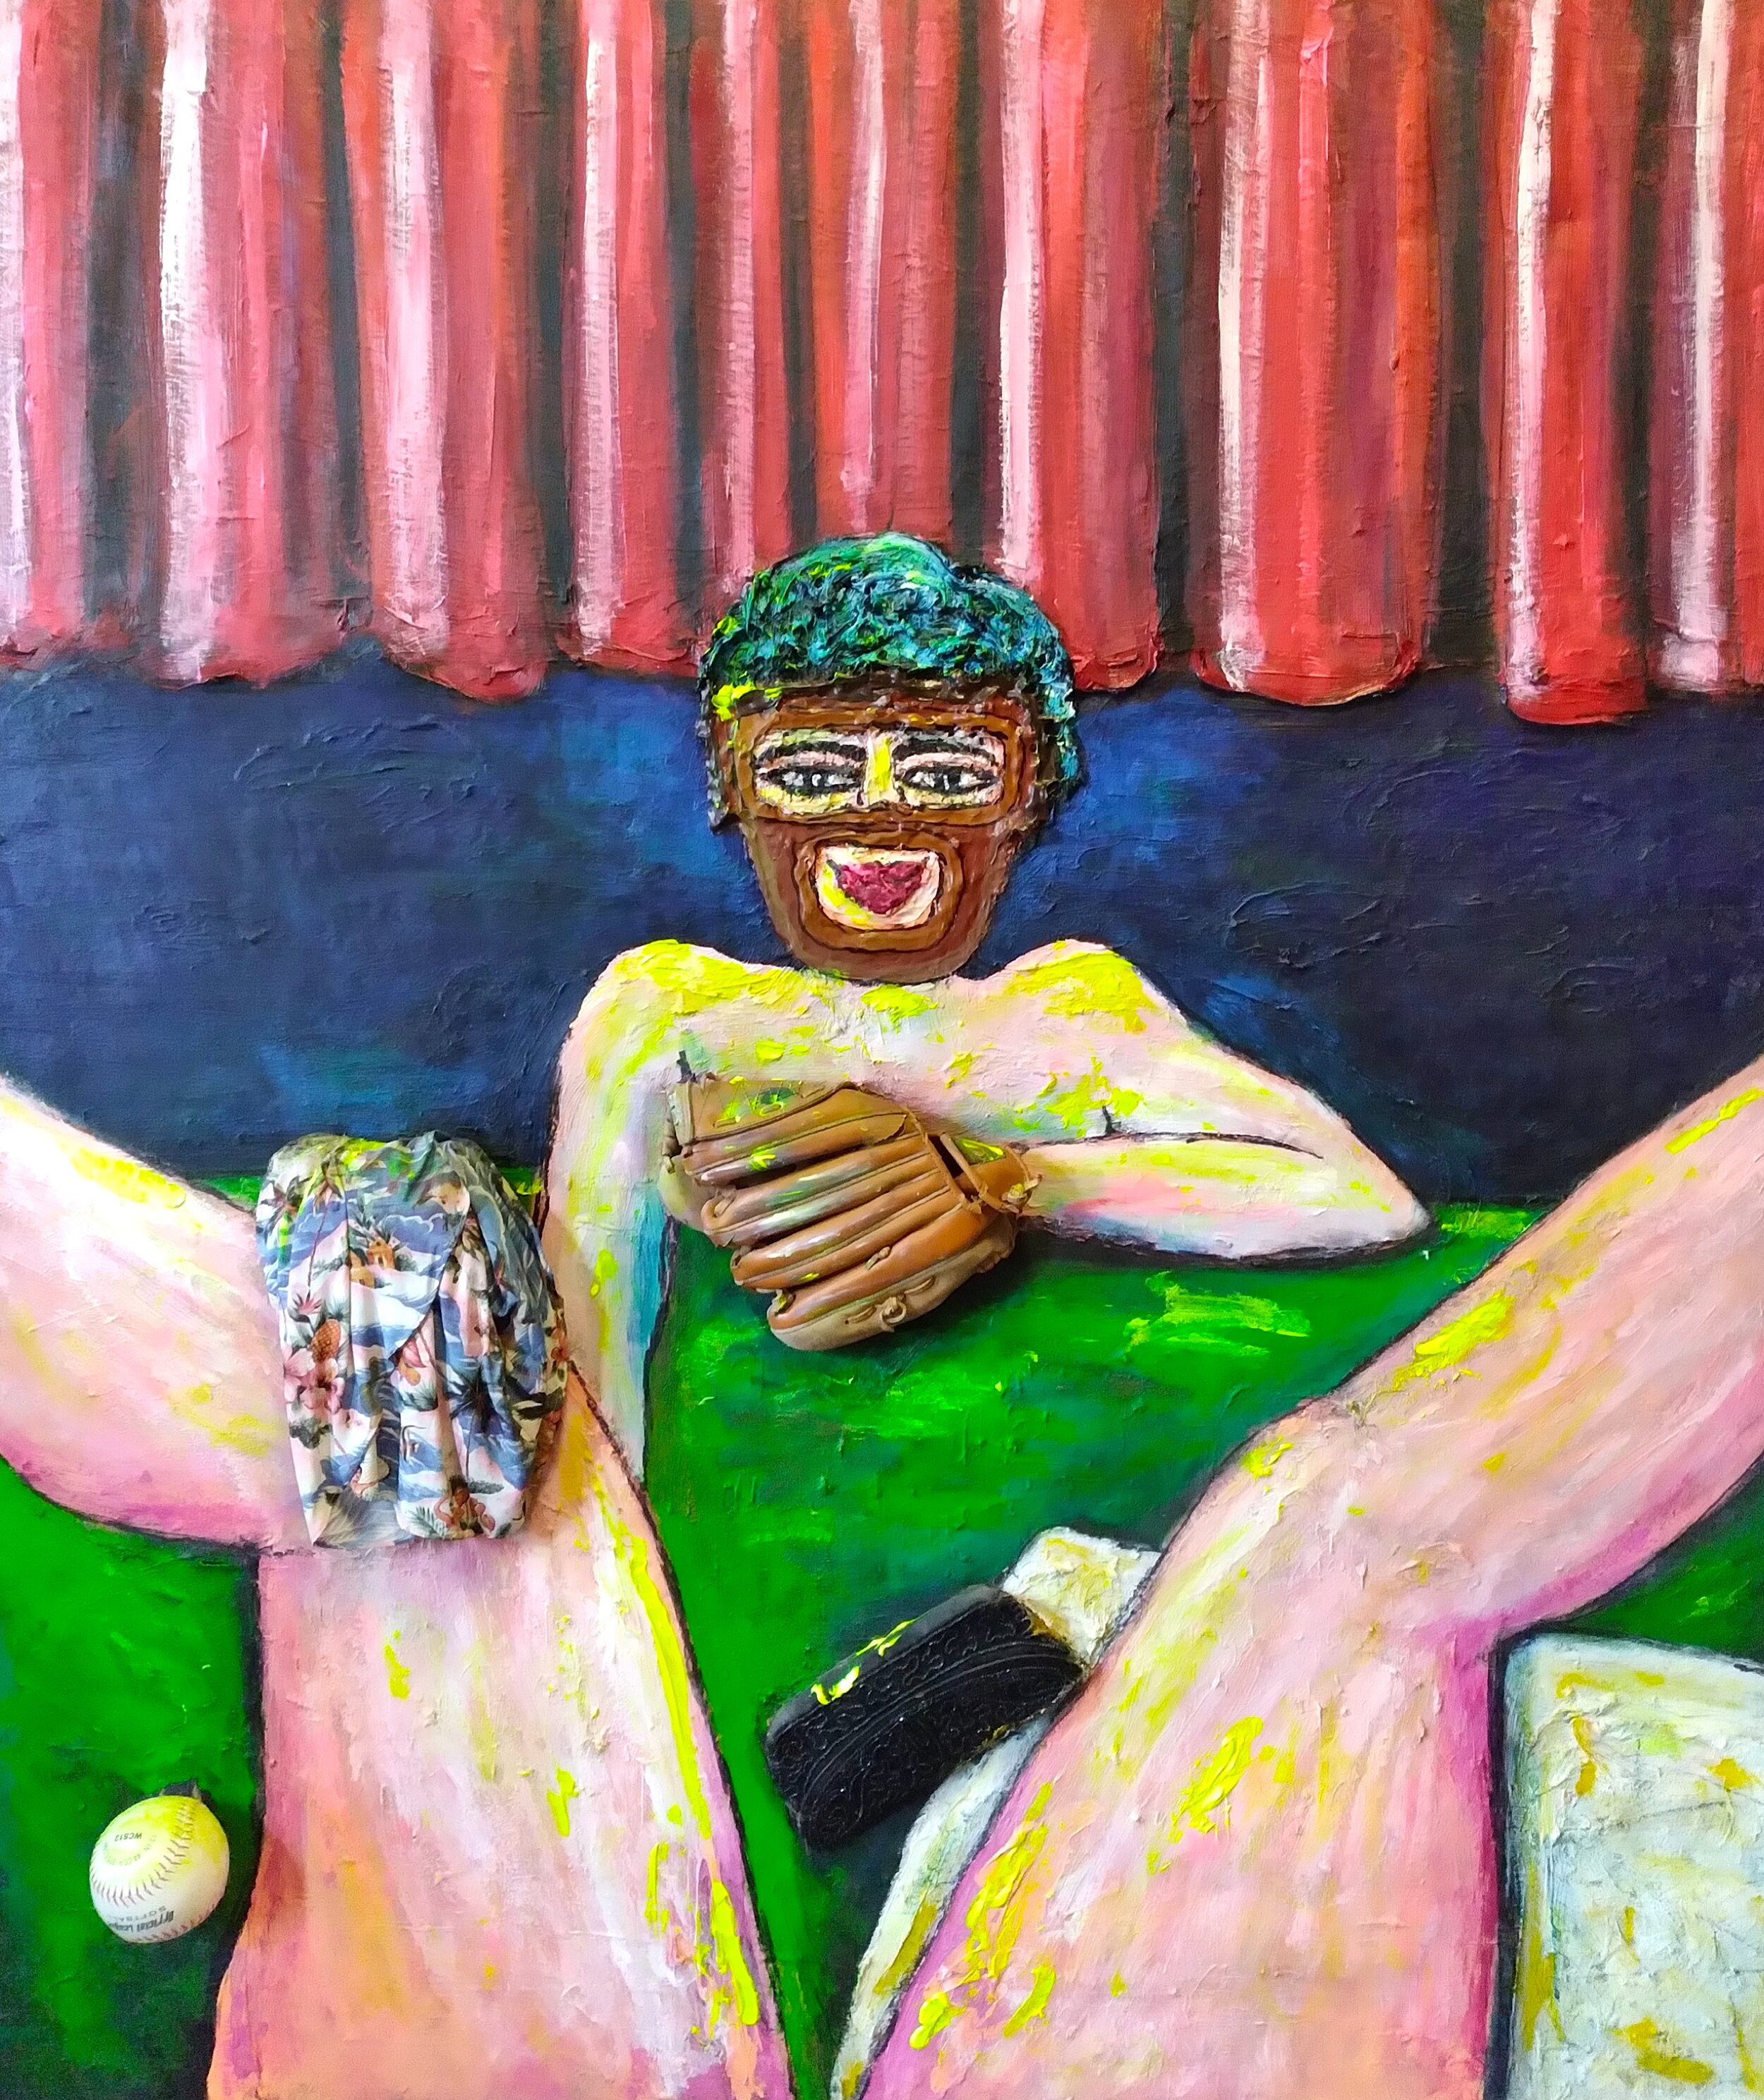 Third Base, 2015. Oil, acrylic, glove, ball on canvas. 62" x 52".